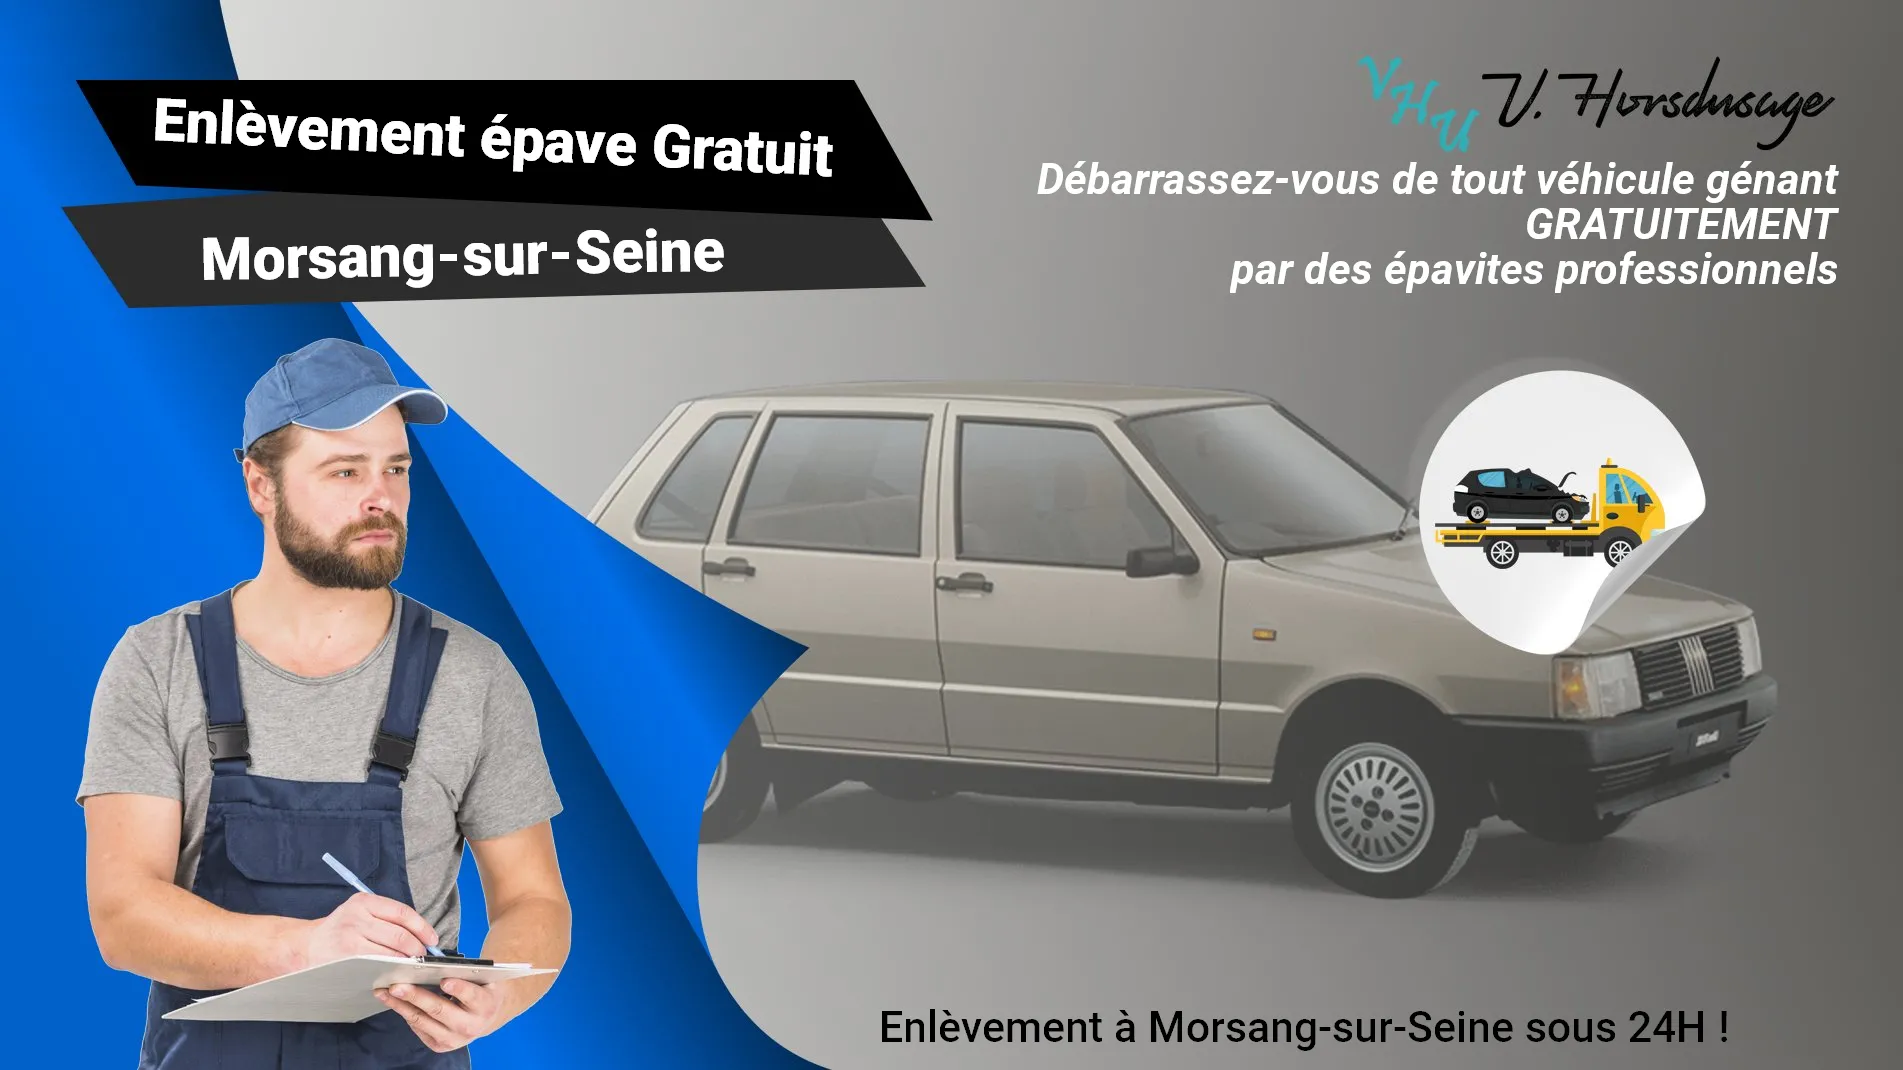 Pour un enlèvement gratuit à Morsang-sur-Seine, contactez nos épavistes agréé VHU